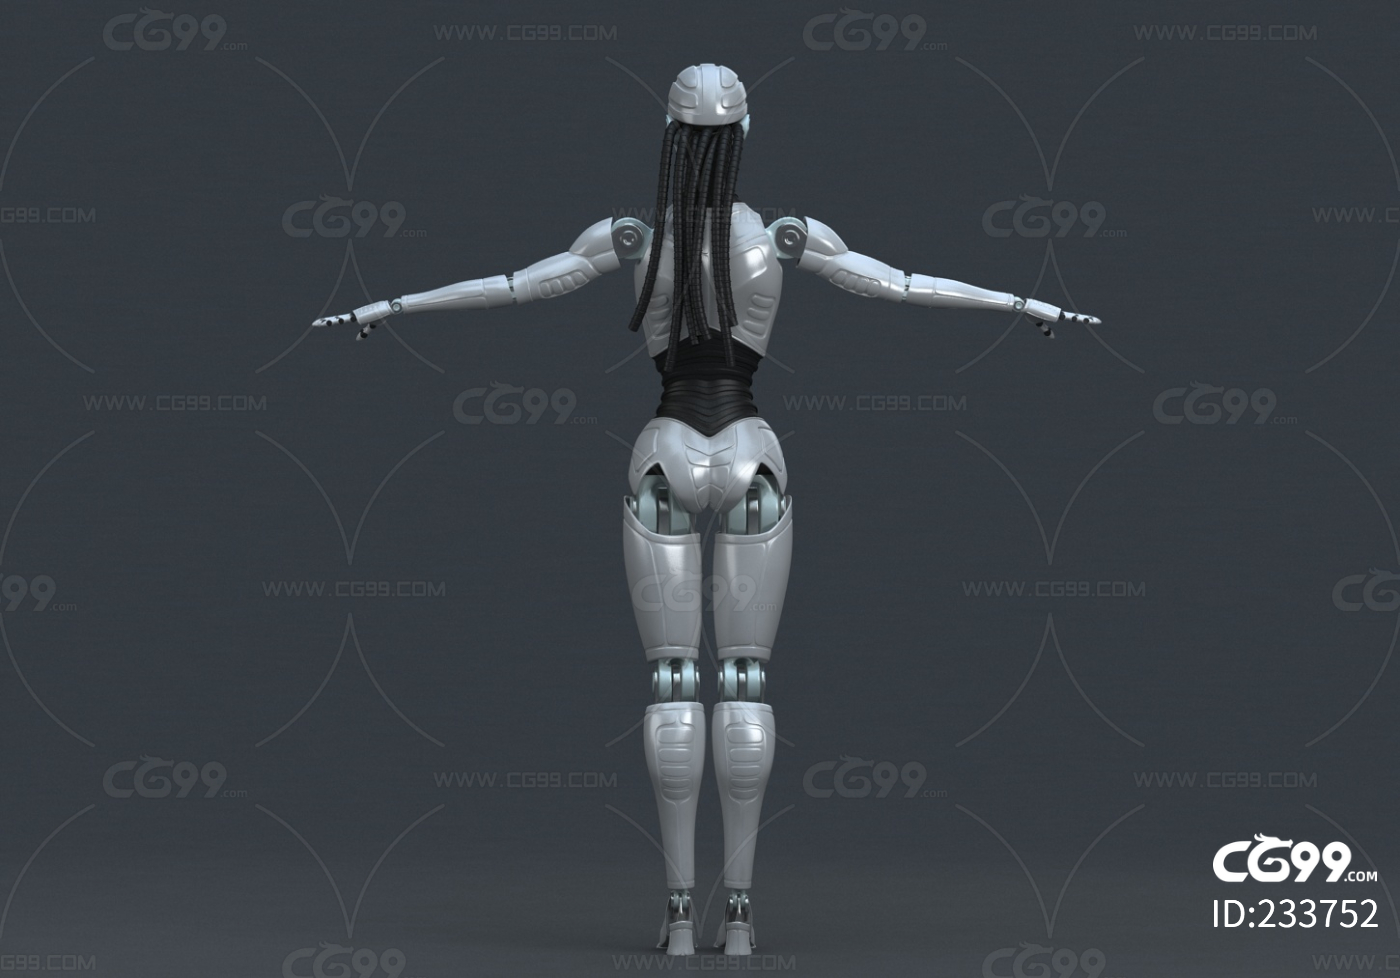 美女机器人图片,美女机器人植入(5) - 伤感说说吧